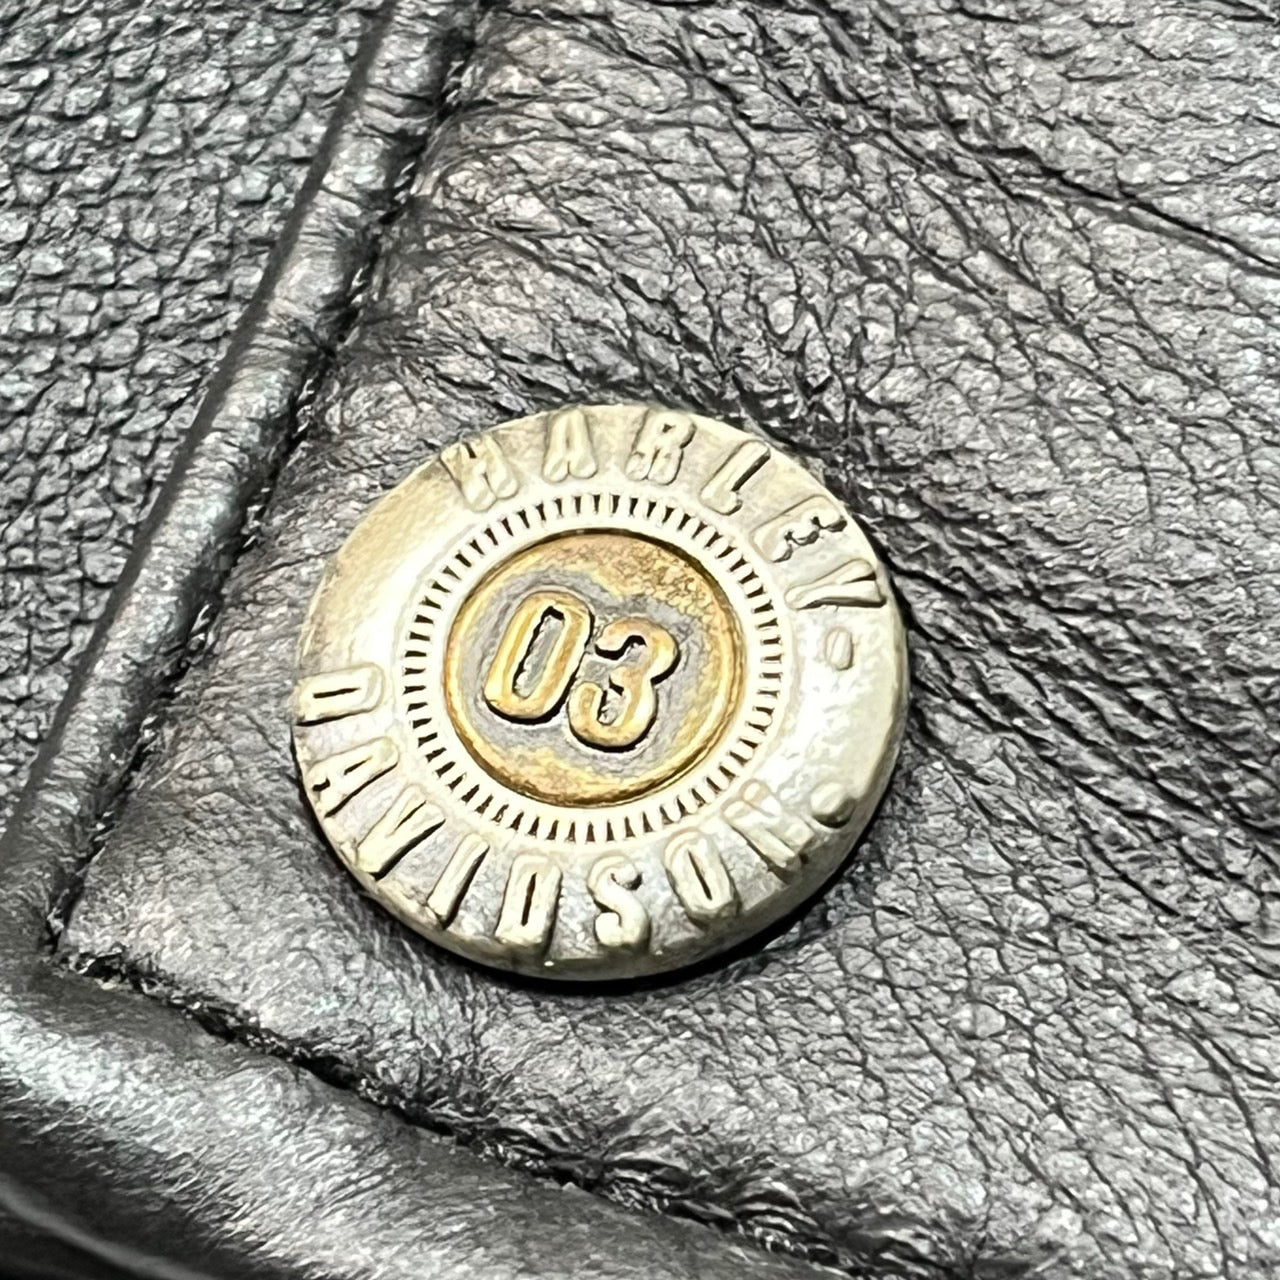 HARLEY DAVIDSON(ハーレーダビッドソン) 100th anniversary leather best/レザーベスト 10319 S ブラック 100年記念モデル